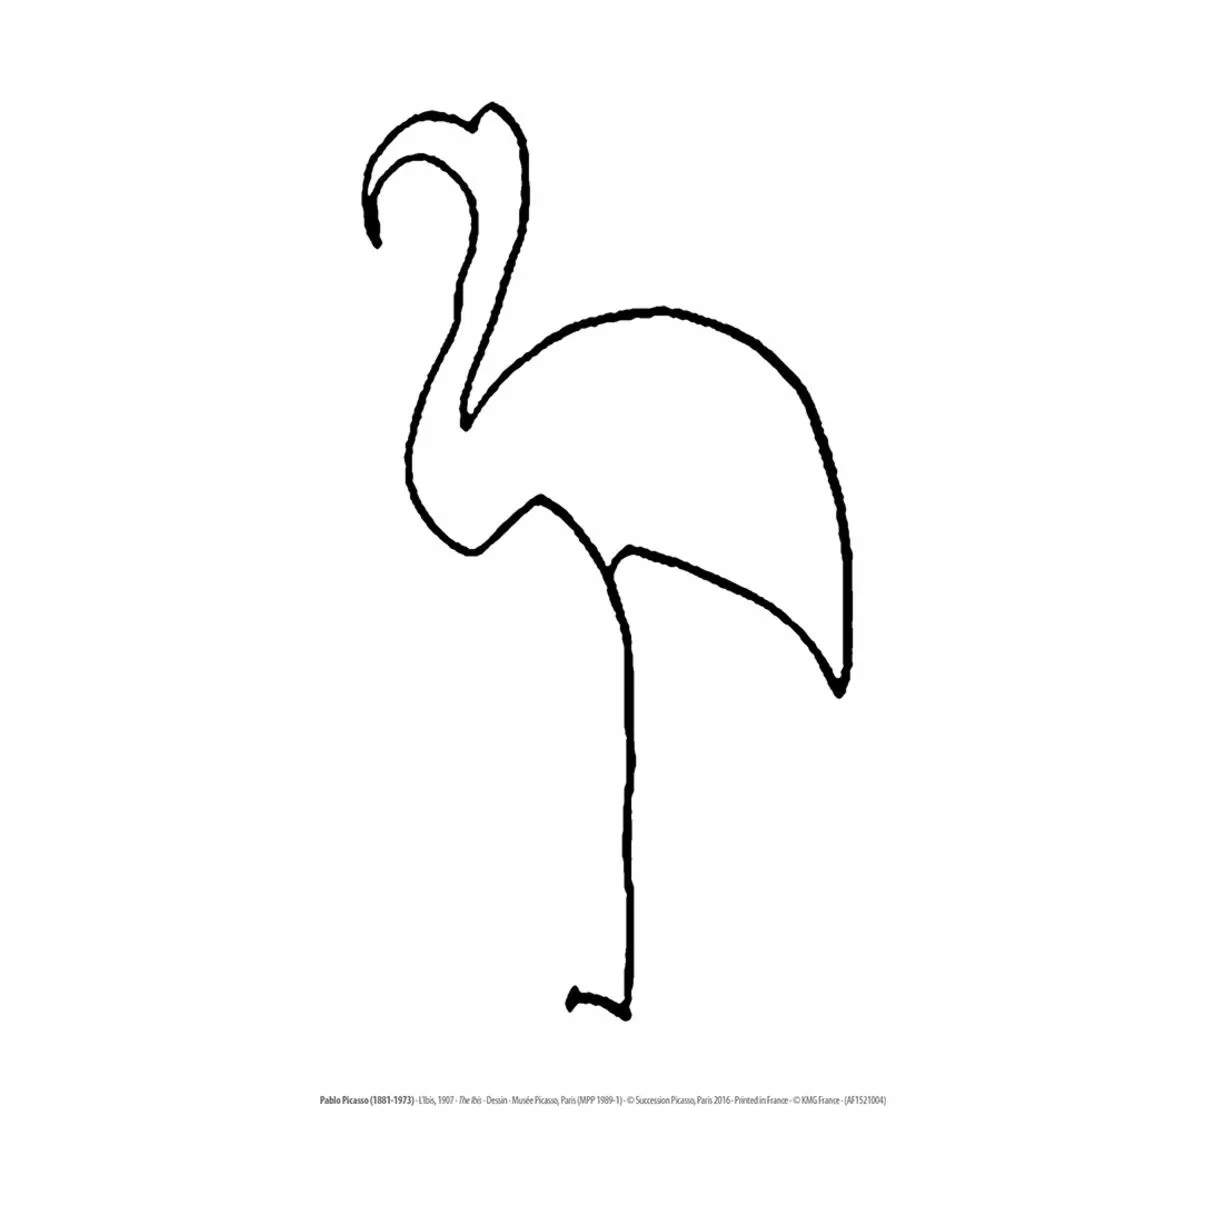 Picasso - Picasso - Ibis - B 30 H 40 cm - - Sort/hvid | Imerco